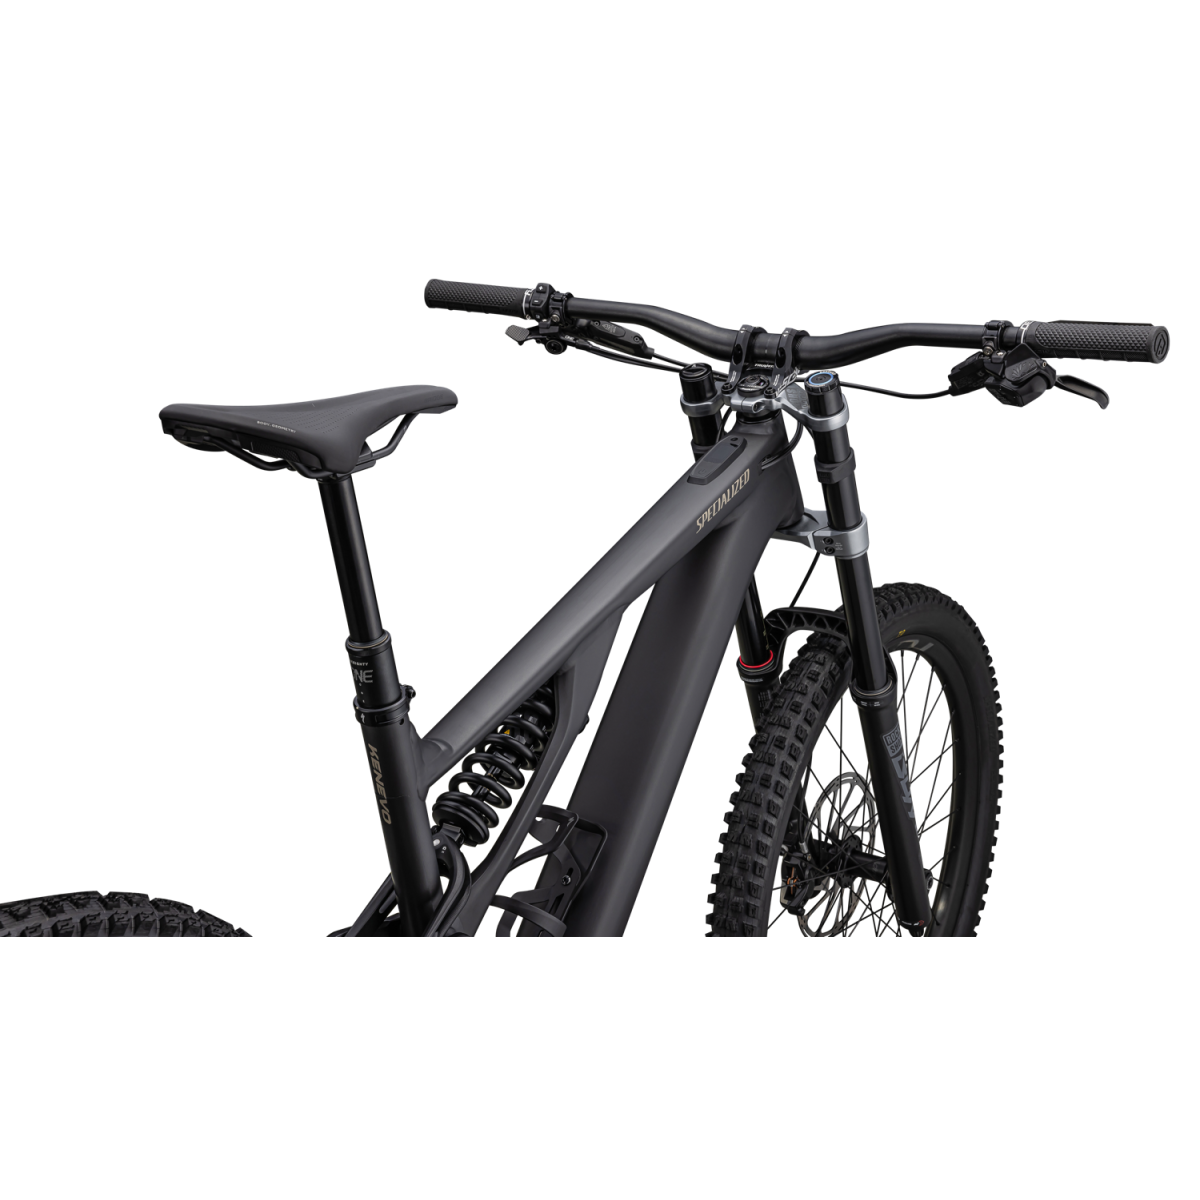 Specialized Turbo Kenevo Expert elektrinis dviratis / Satin Obsidian